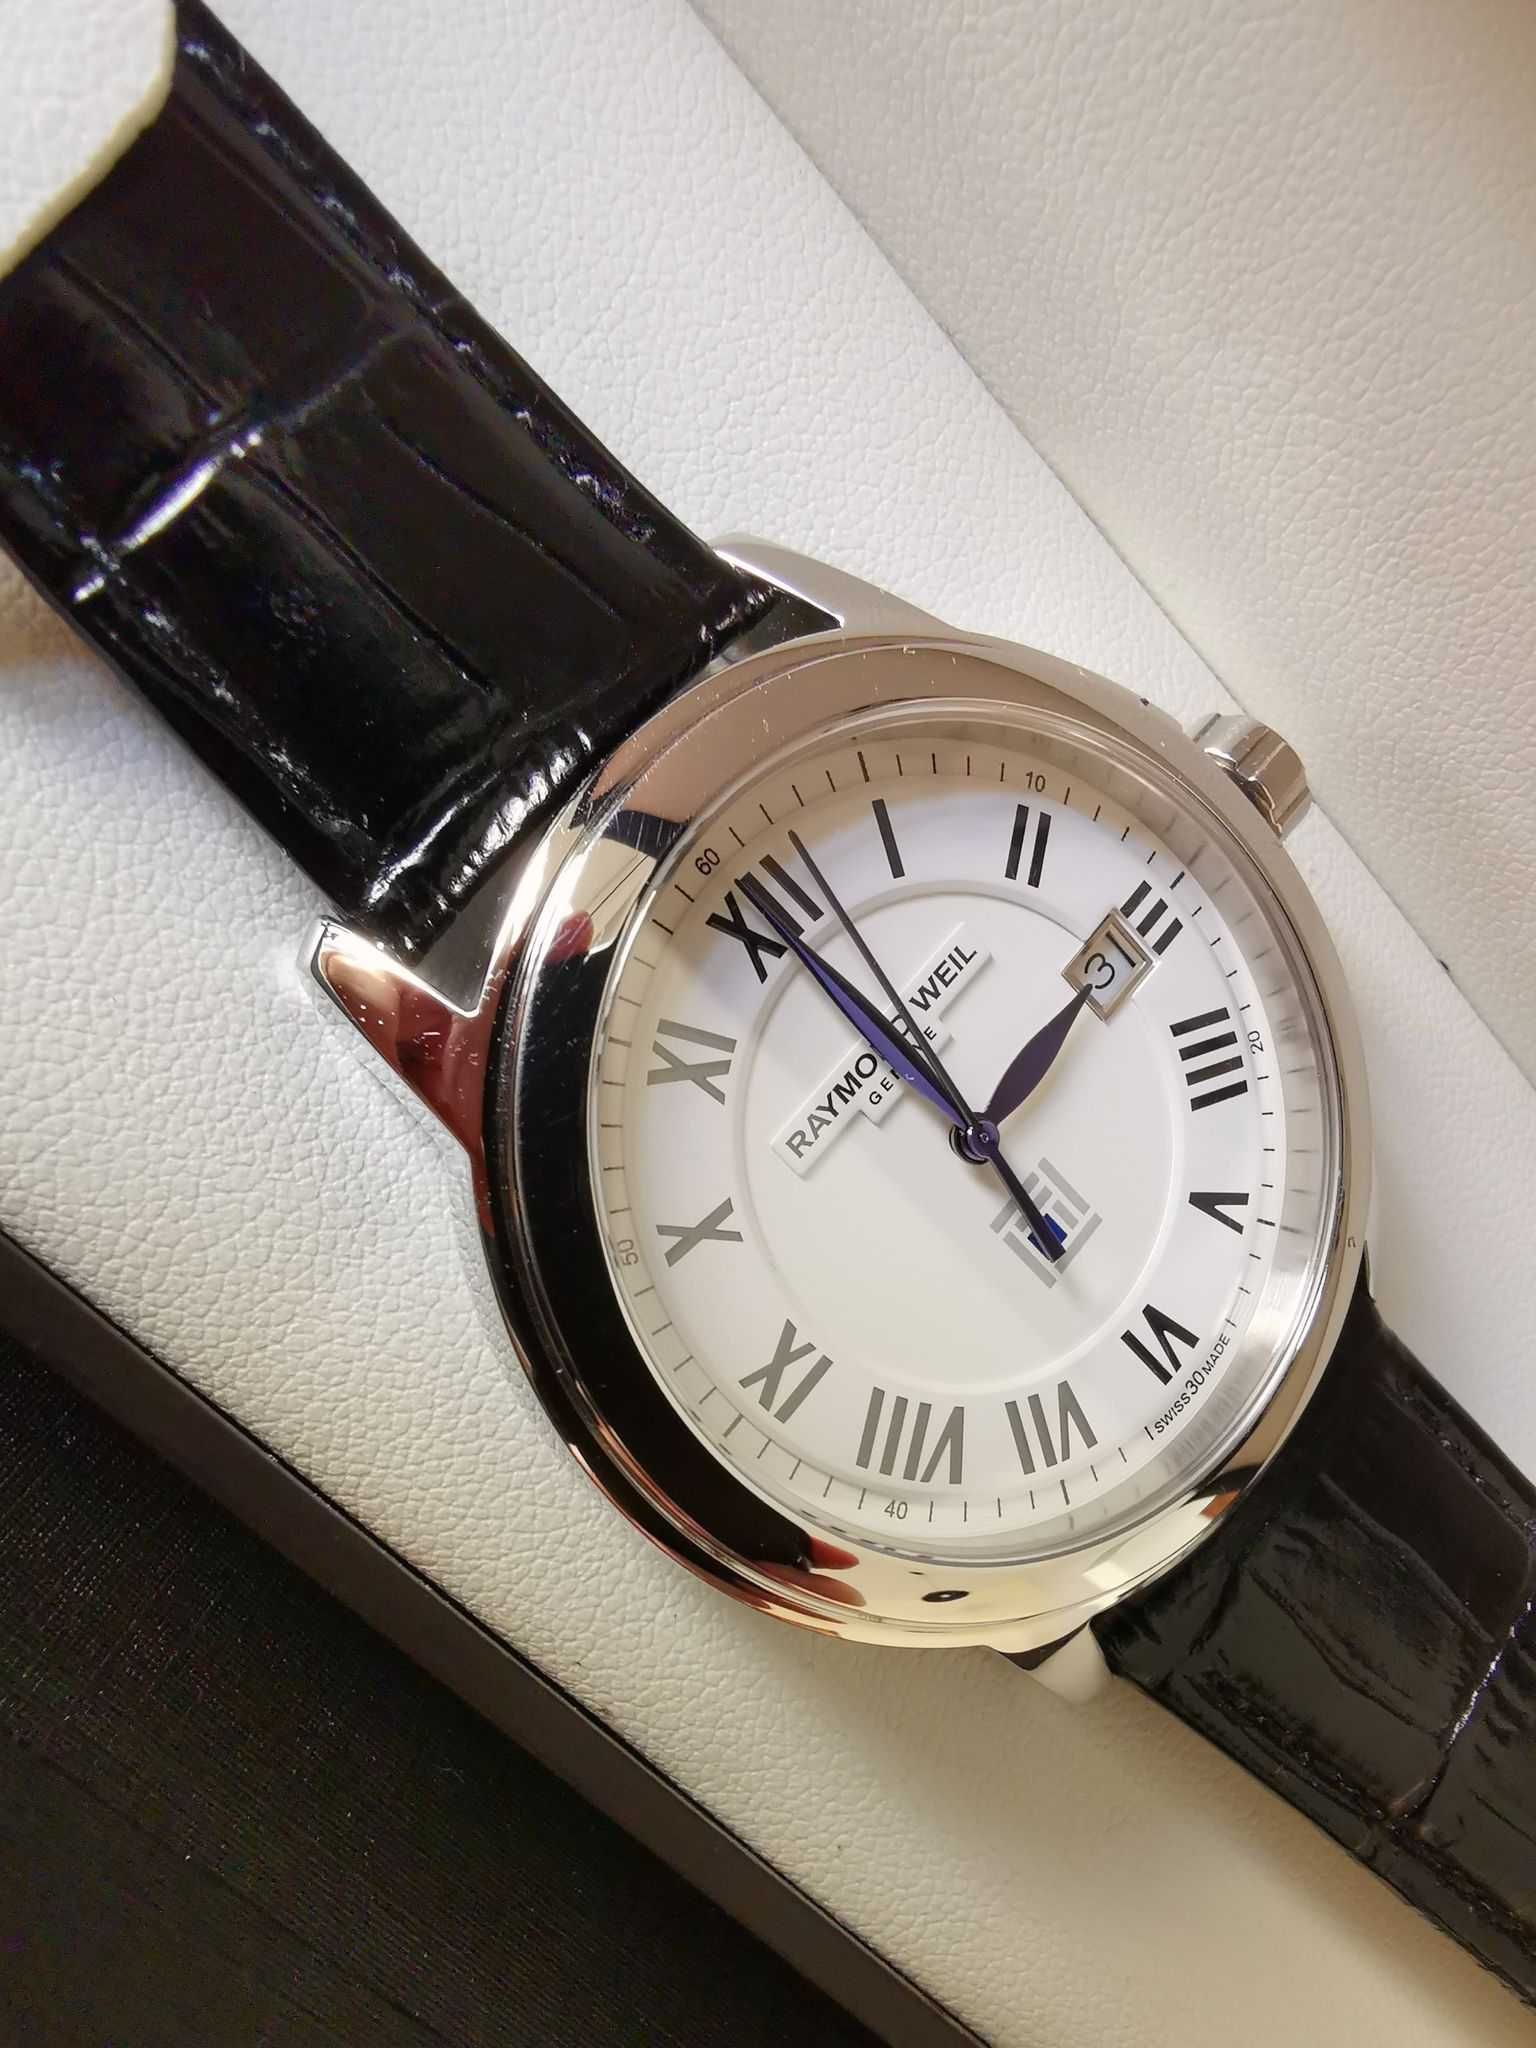 Zegarek męski Raymond Weil  5578 nowy, skórzany pasek.